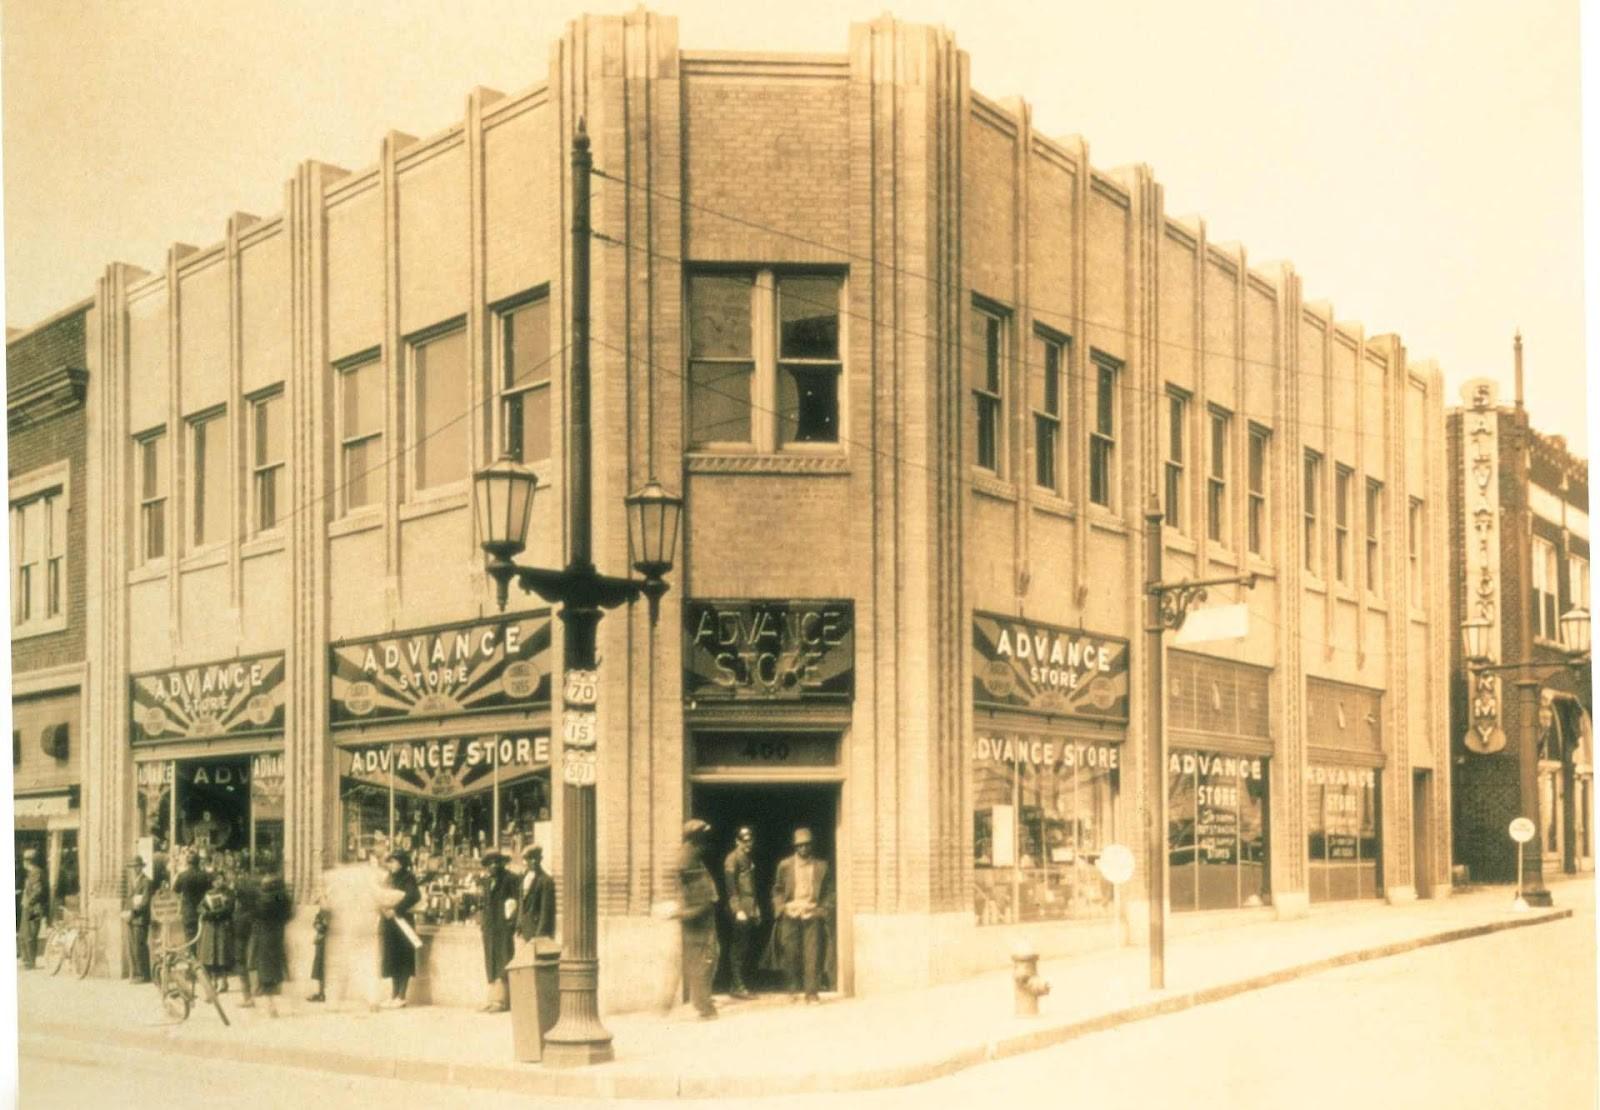 Advance Auto store in 1948